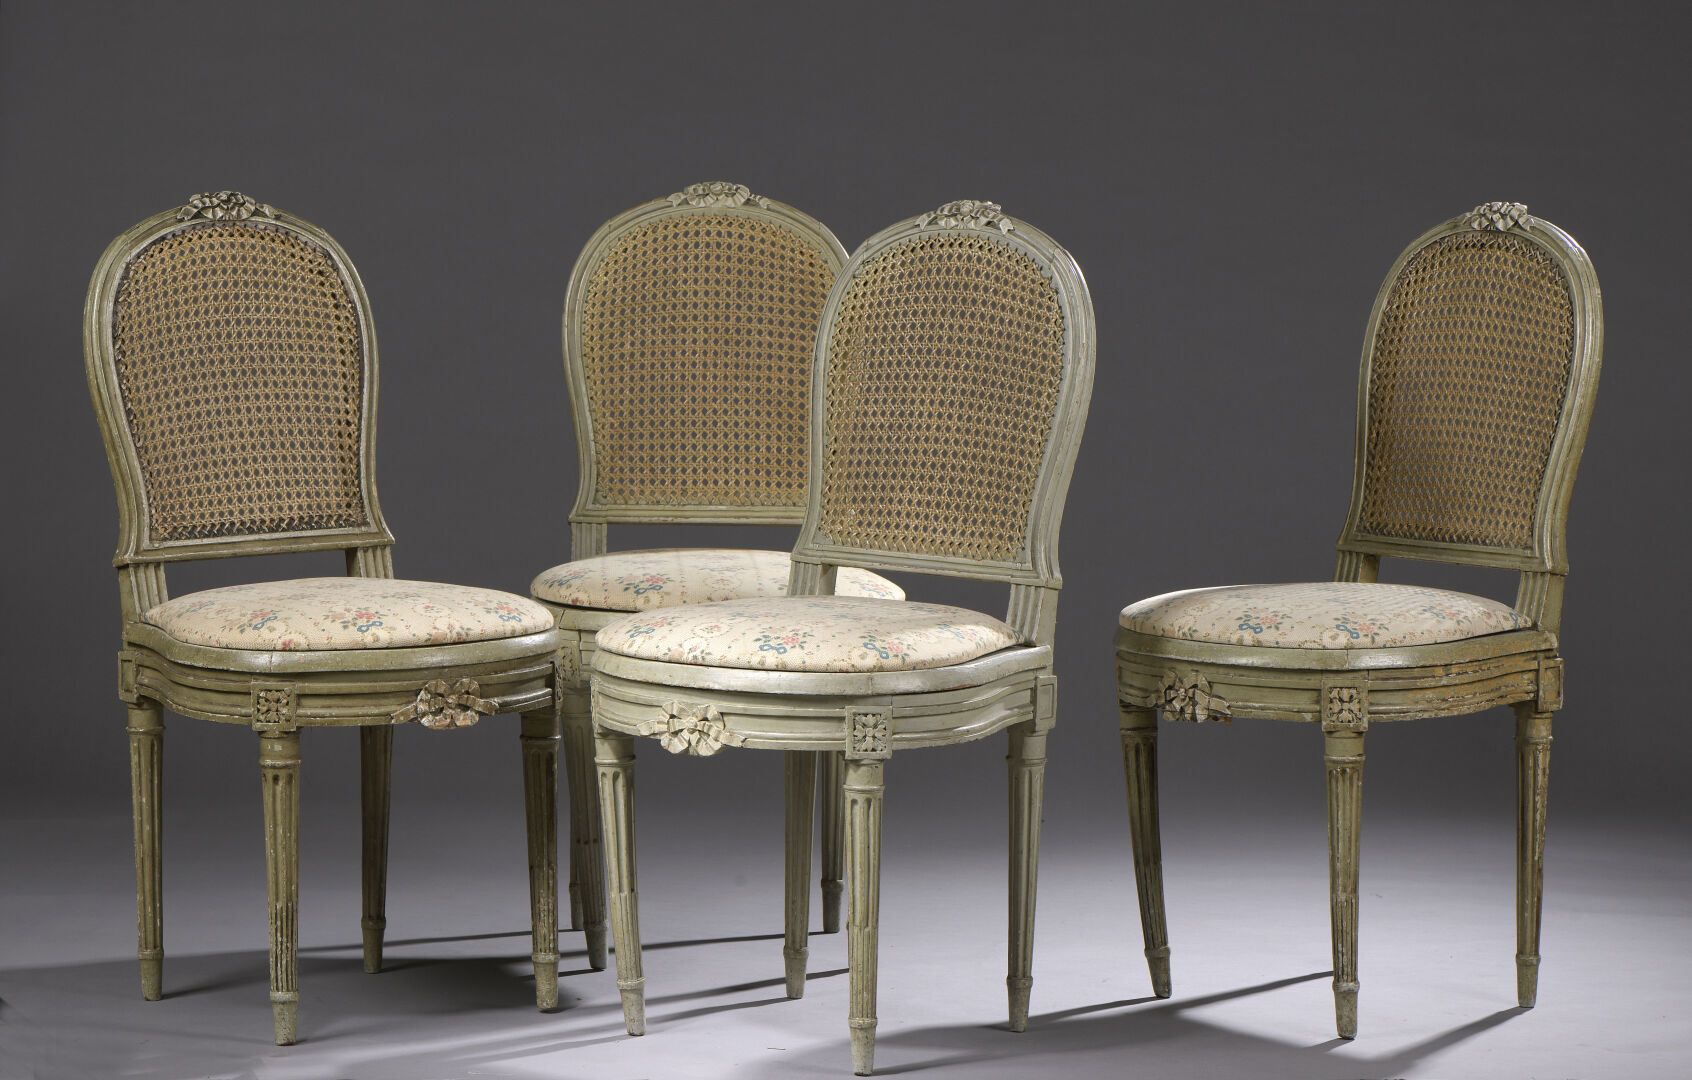 Null Juego de cuatro sillas de madera tallada y lacada de la época Luis XVI.

El&hellip;